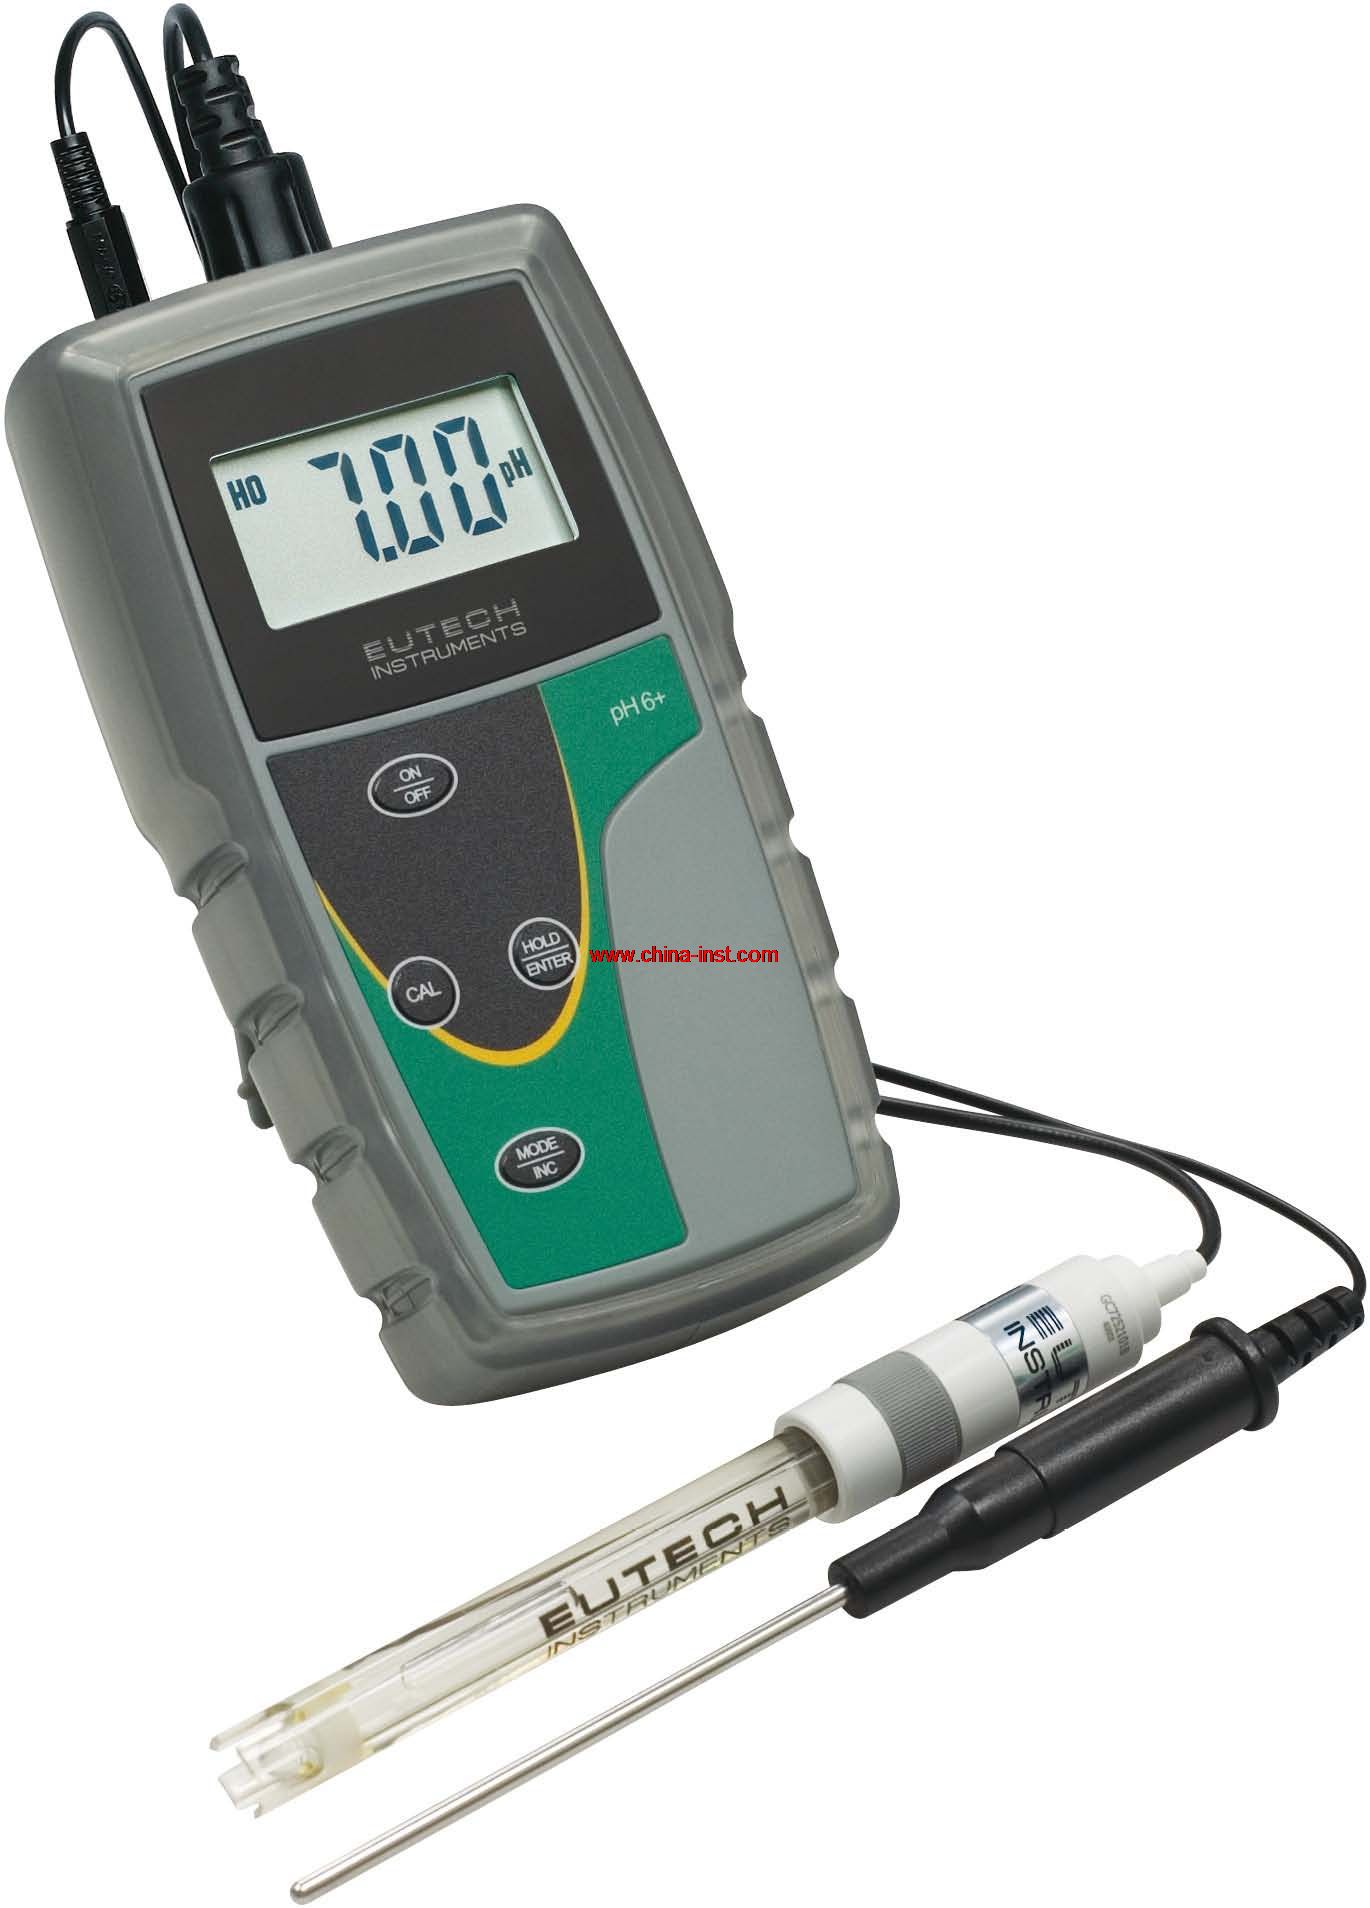 Eutech优特 pH 6+ 便携式pH测量仪